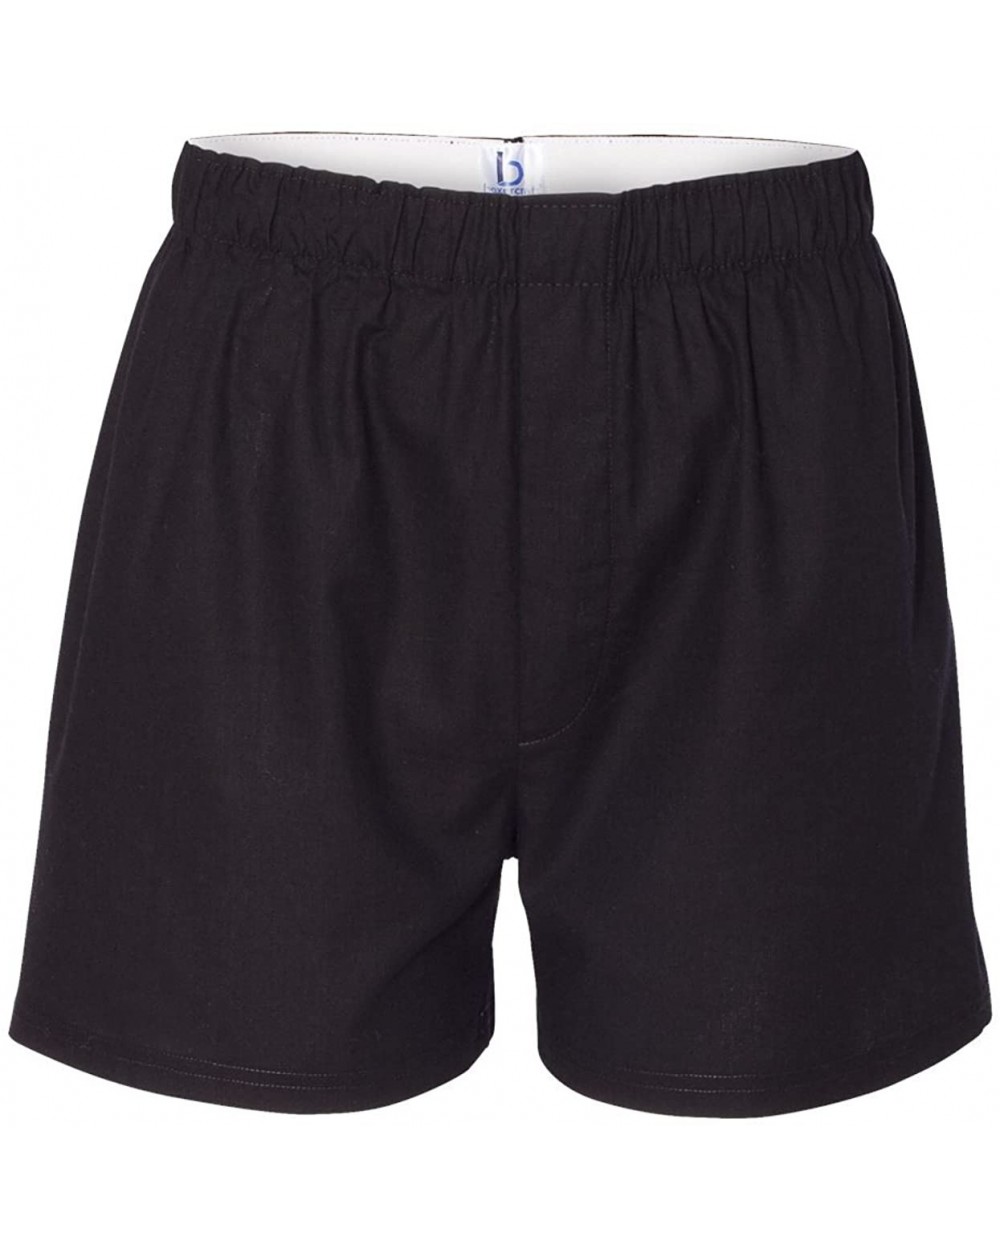 Unisex Boxer Style Shorts C11 Black XX-Large - CR120Y45T0T $15.23 Boxer Briefs